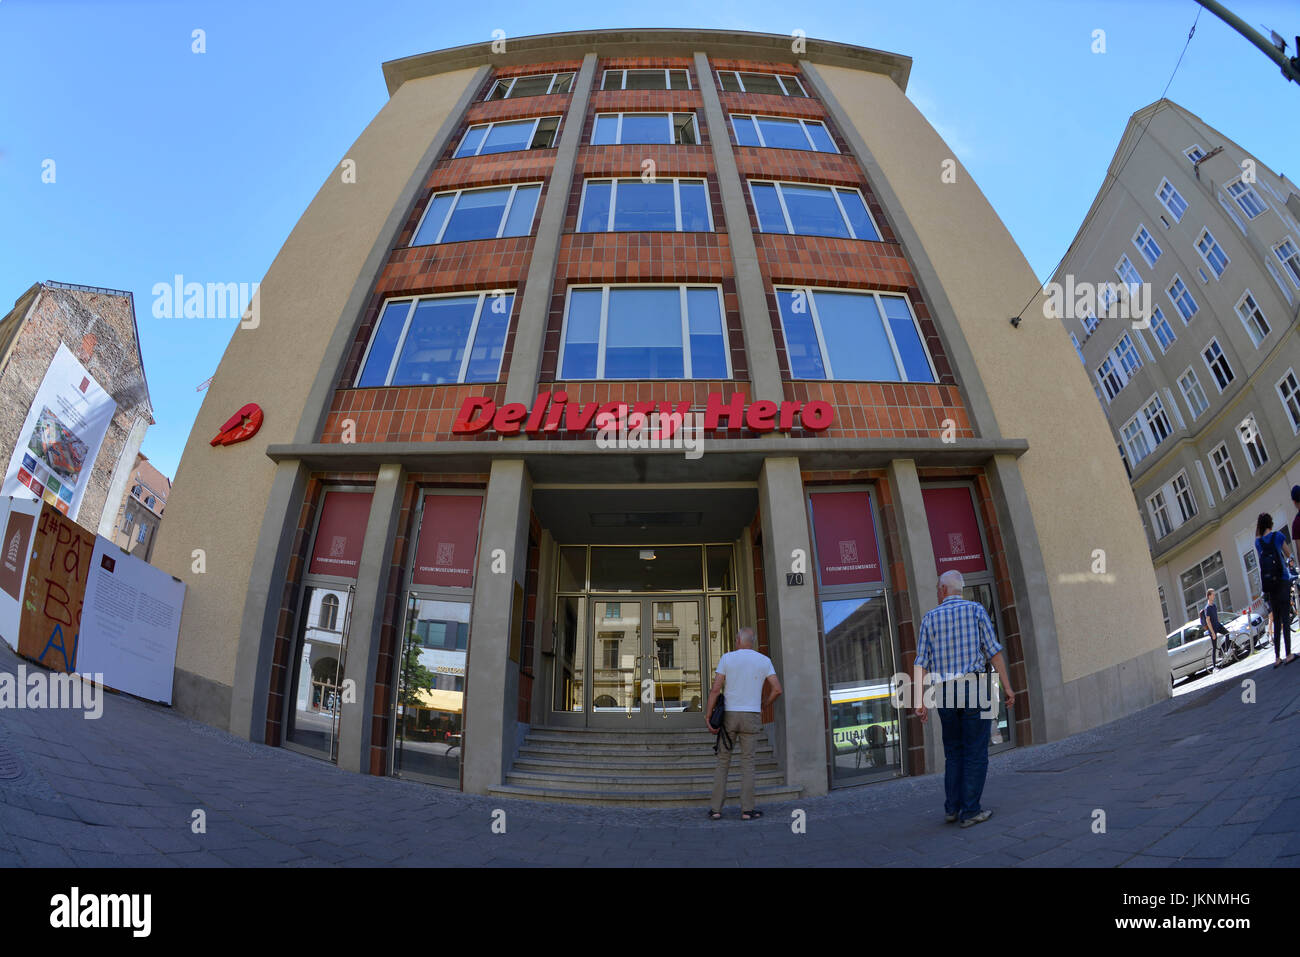 Lieferung Held, Oranienburger Straße, Mitte, Oranienburger Straße, Mitte, Berlin, Germany, Deutschland Stockfoto